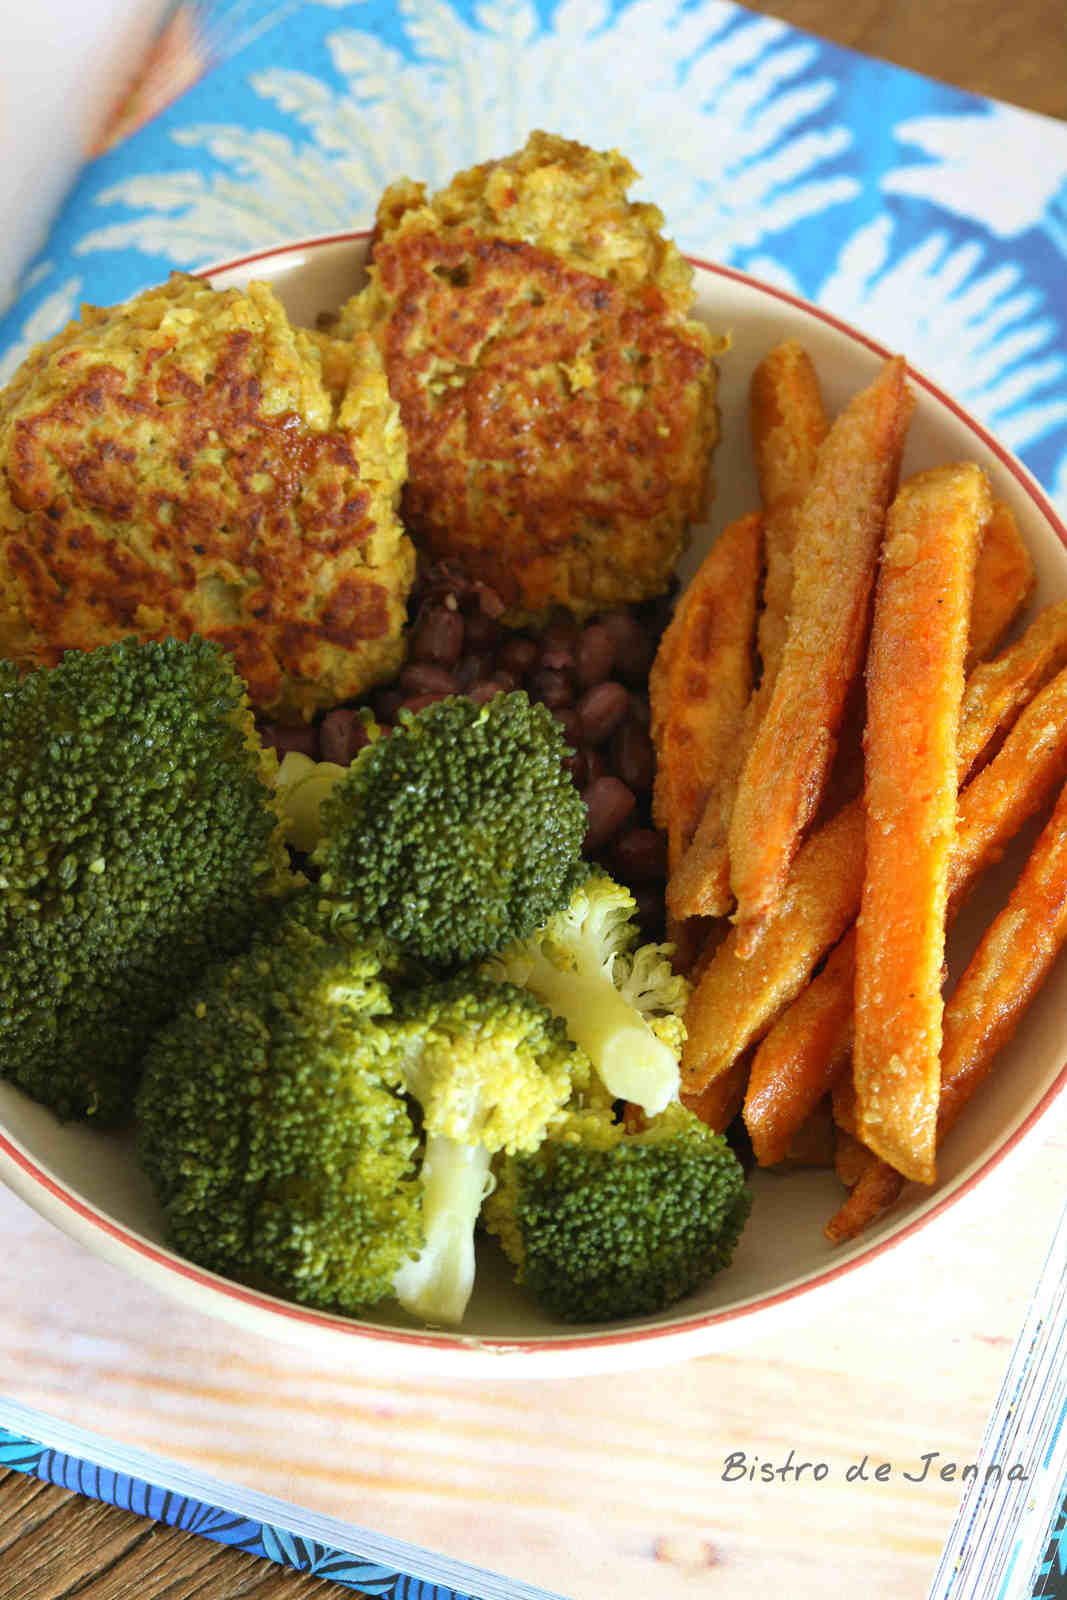 Végétale bowl riche en protéines et fibres végétales